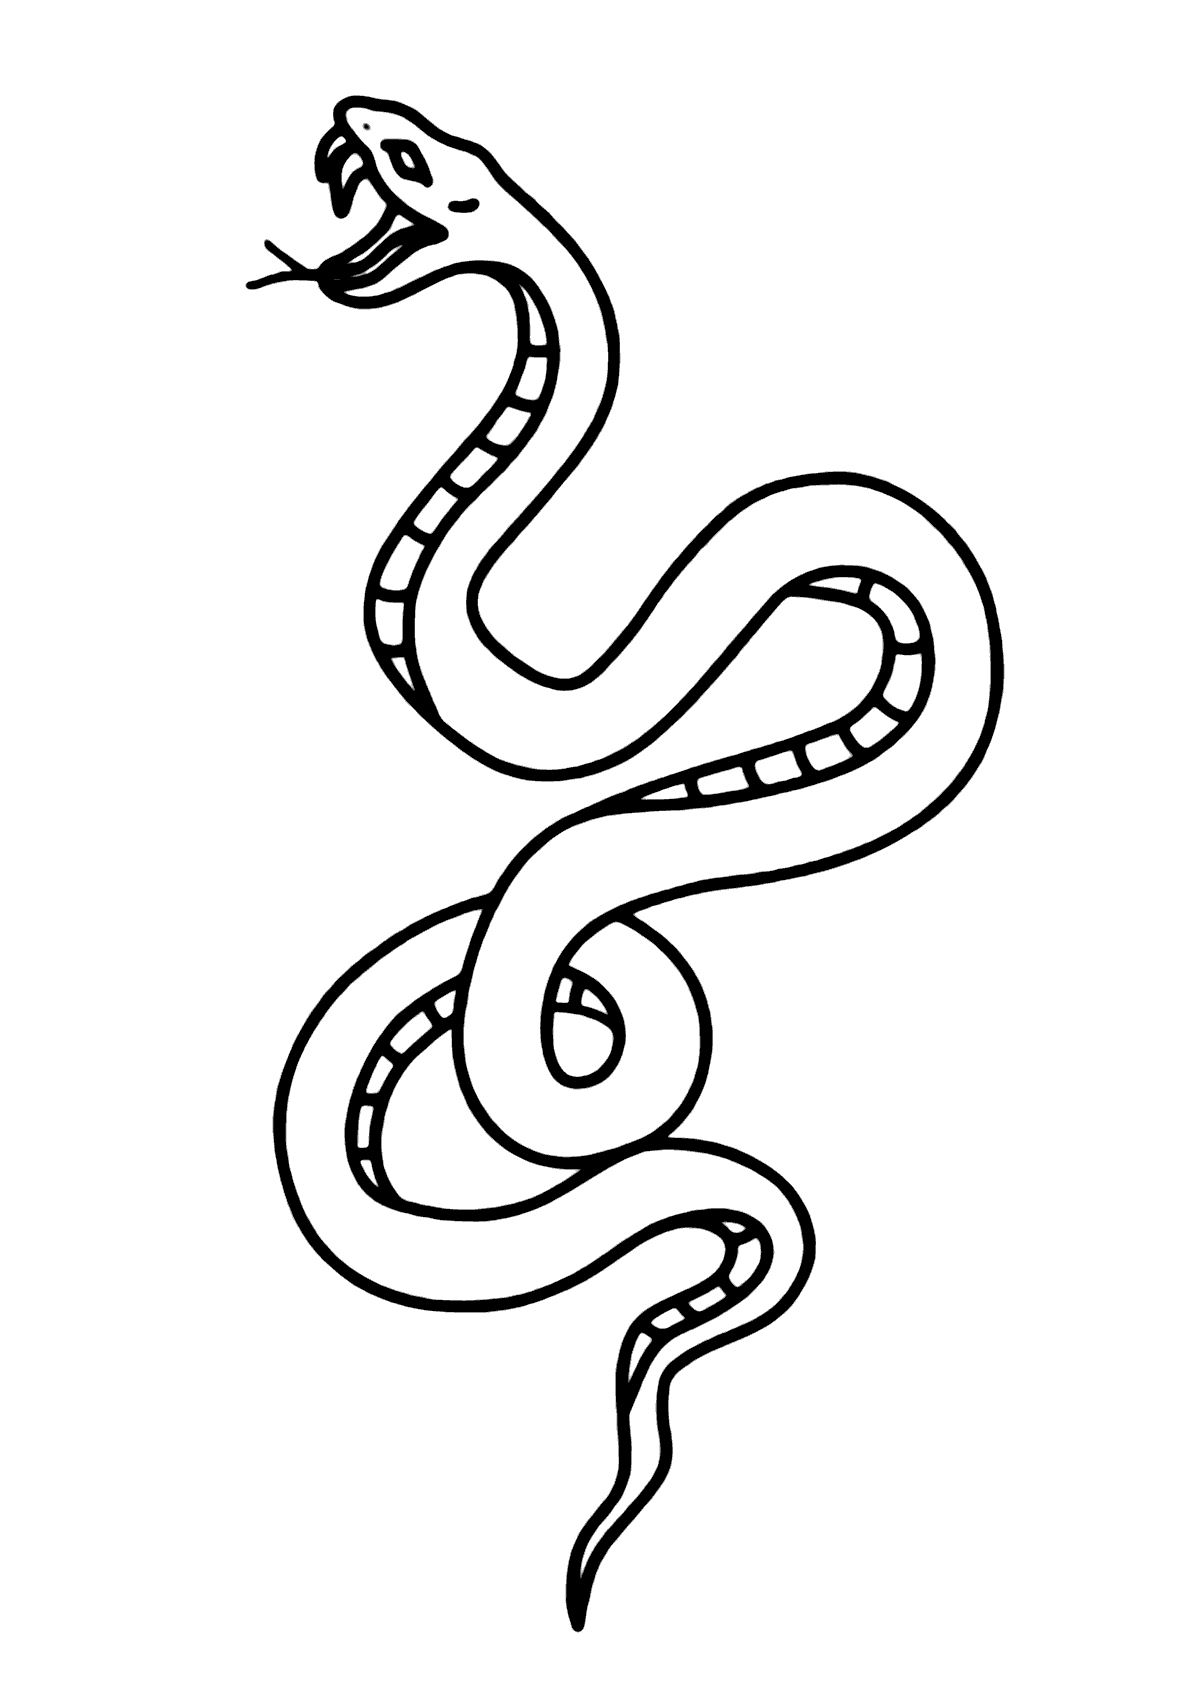 Desenho Para Colorir cobra - Imagens Grátis Para Imprimir - img 10355